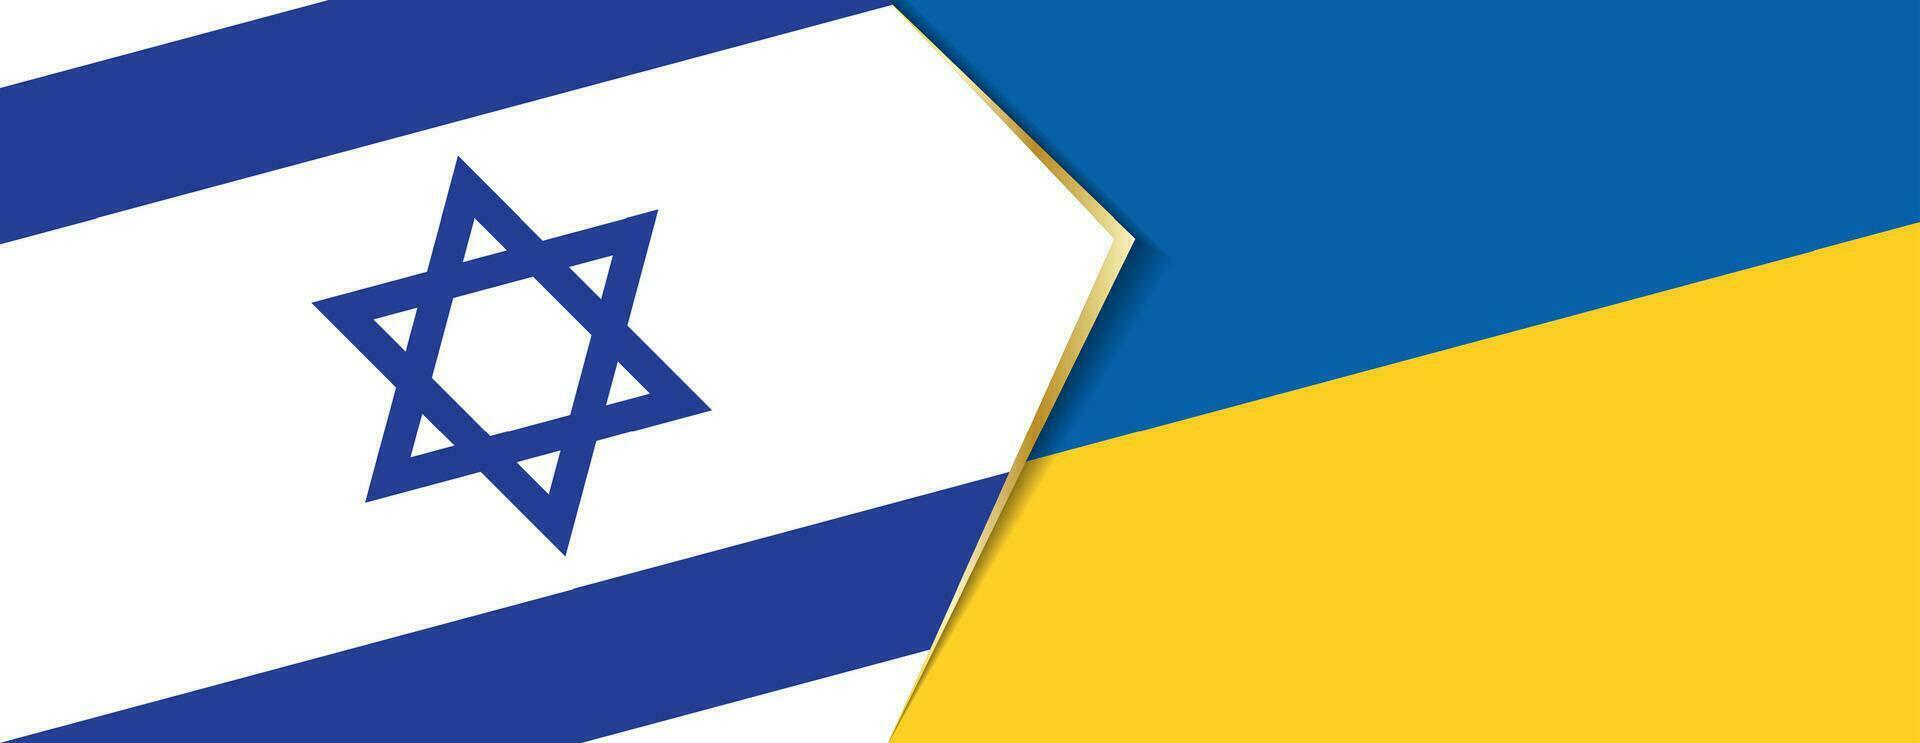 Israel y Ucrania banderas, dos vector banderas